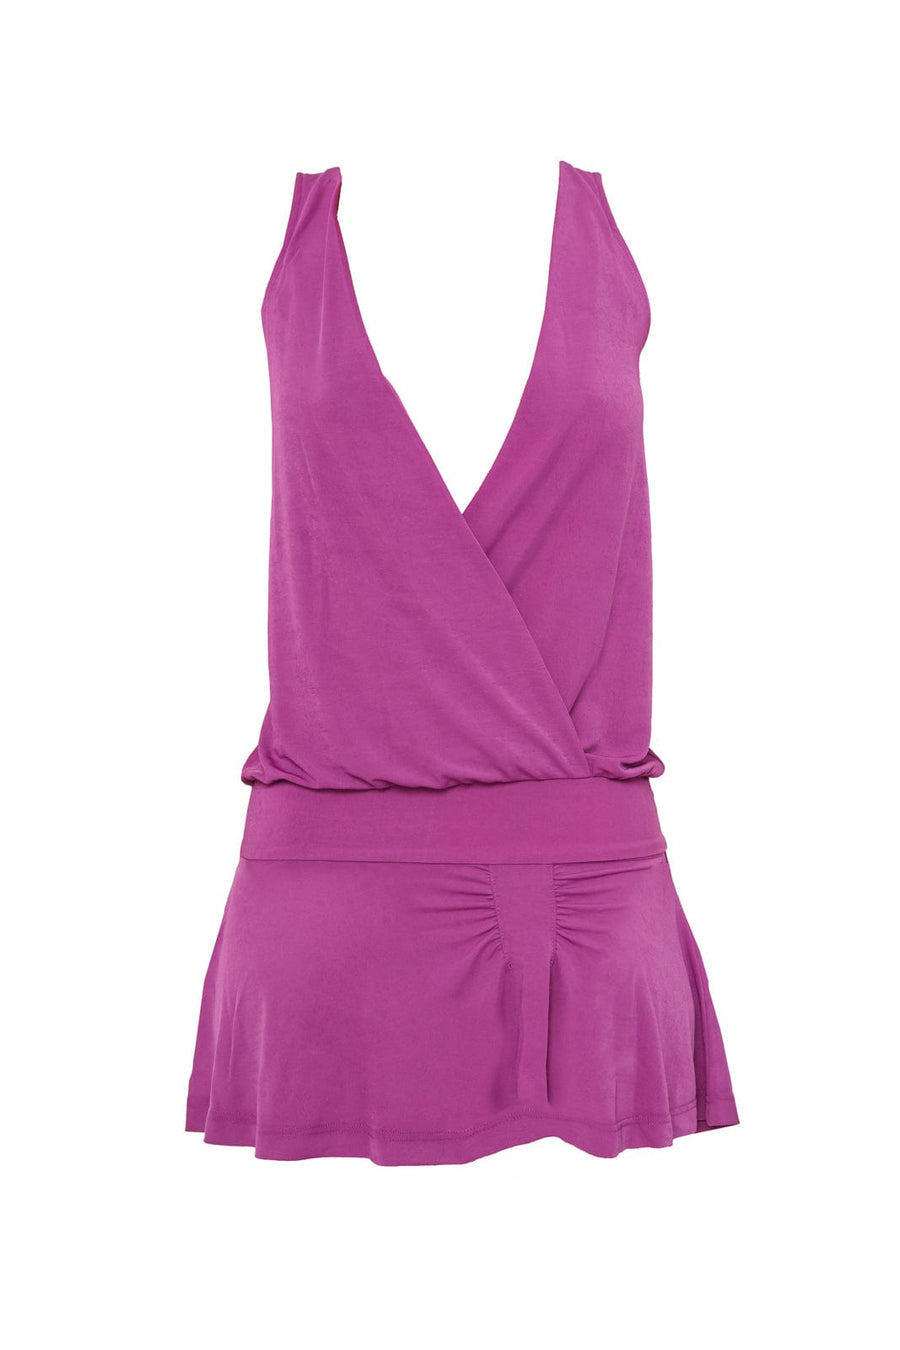 SAMBA dress- violet  -  CLOTHING  -  B Ā M B A S W I M